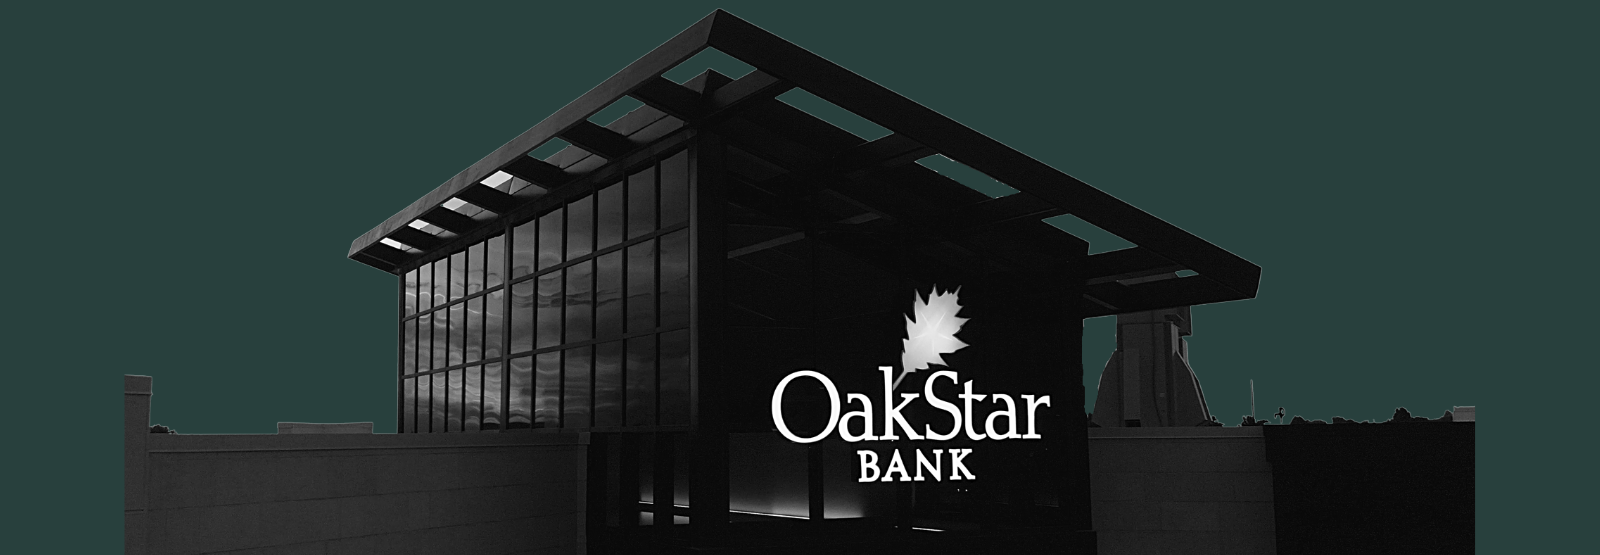 OkaStar Bank exterior dark shot